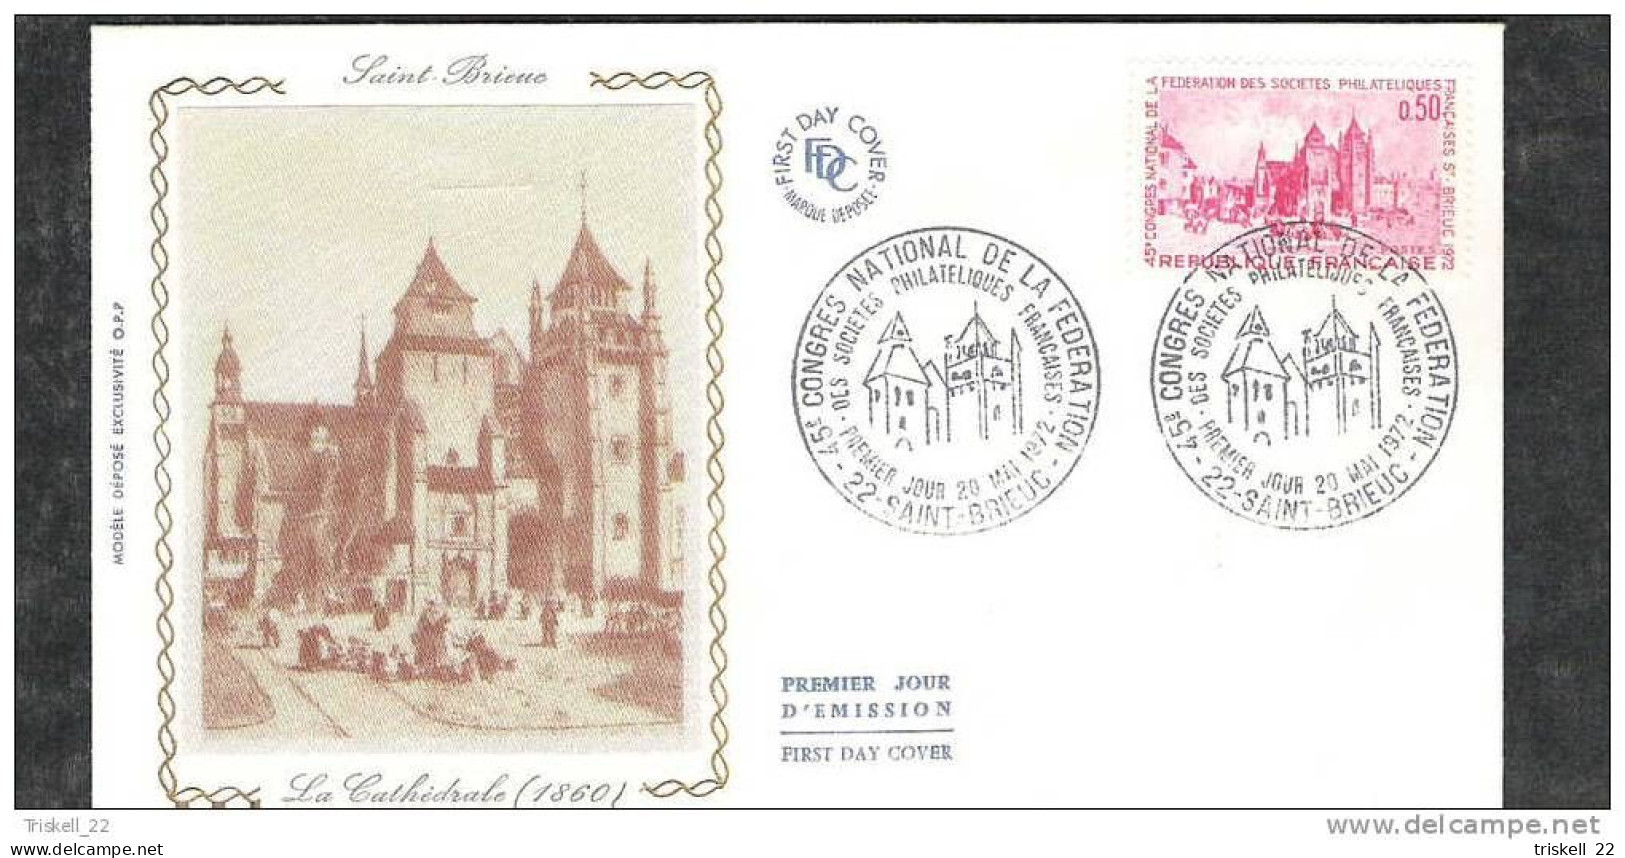 FDC : lot de 3 cartes et 7 enveloppes Saint-Brieuc 45° congrès phil. 1972 - vente au détail sur demande